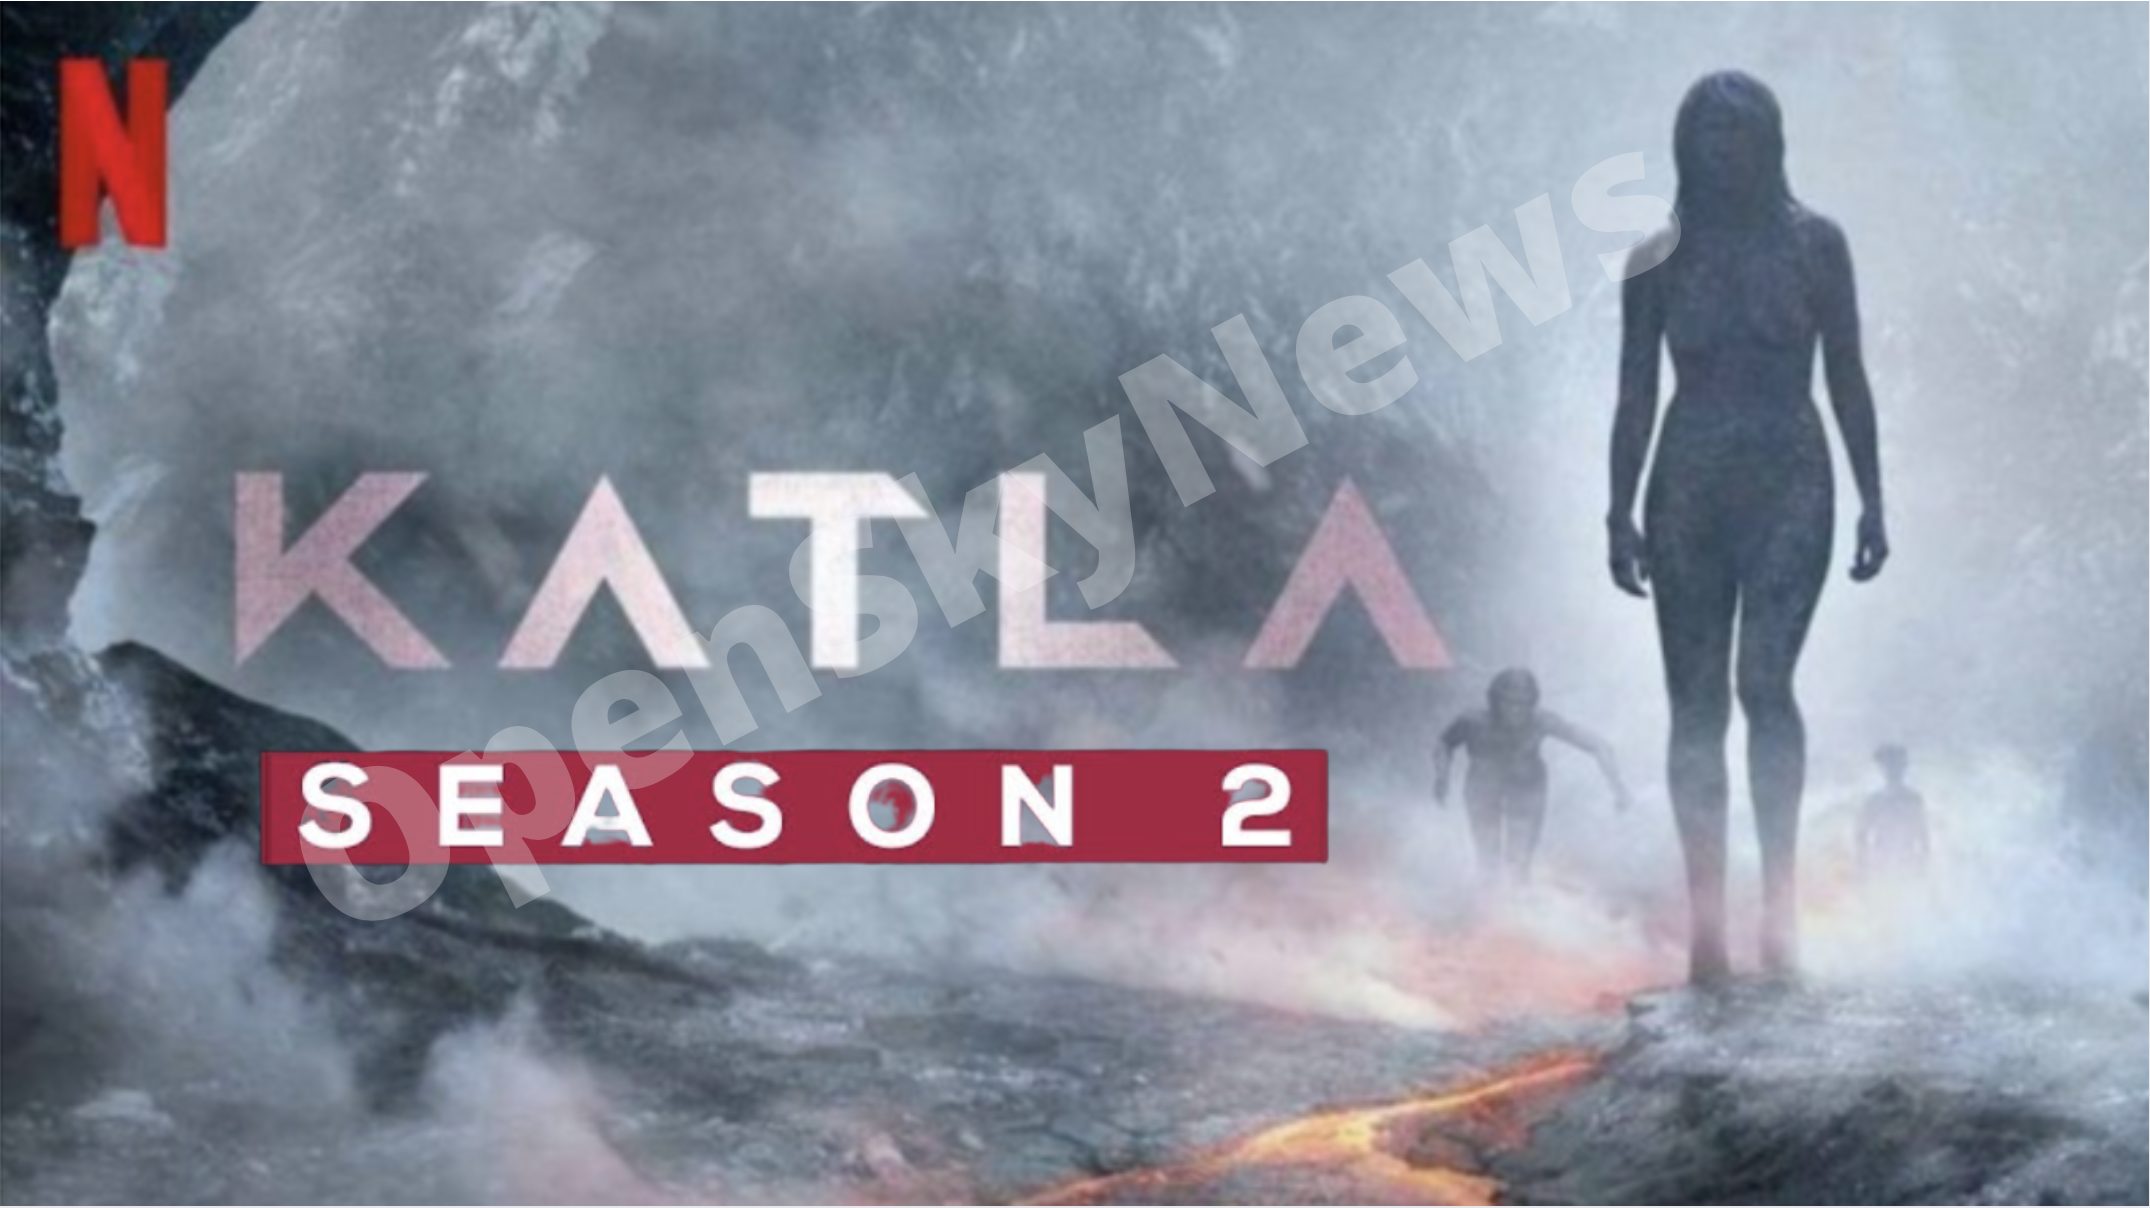 Katla Season 2